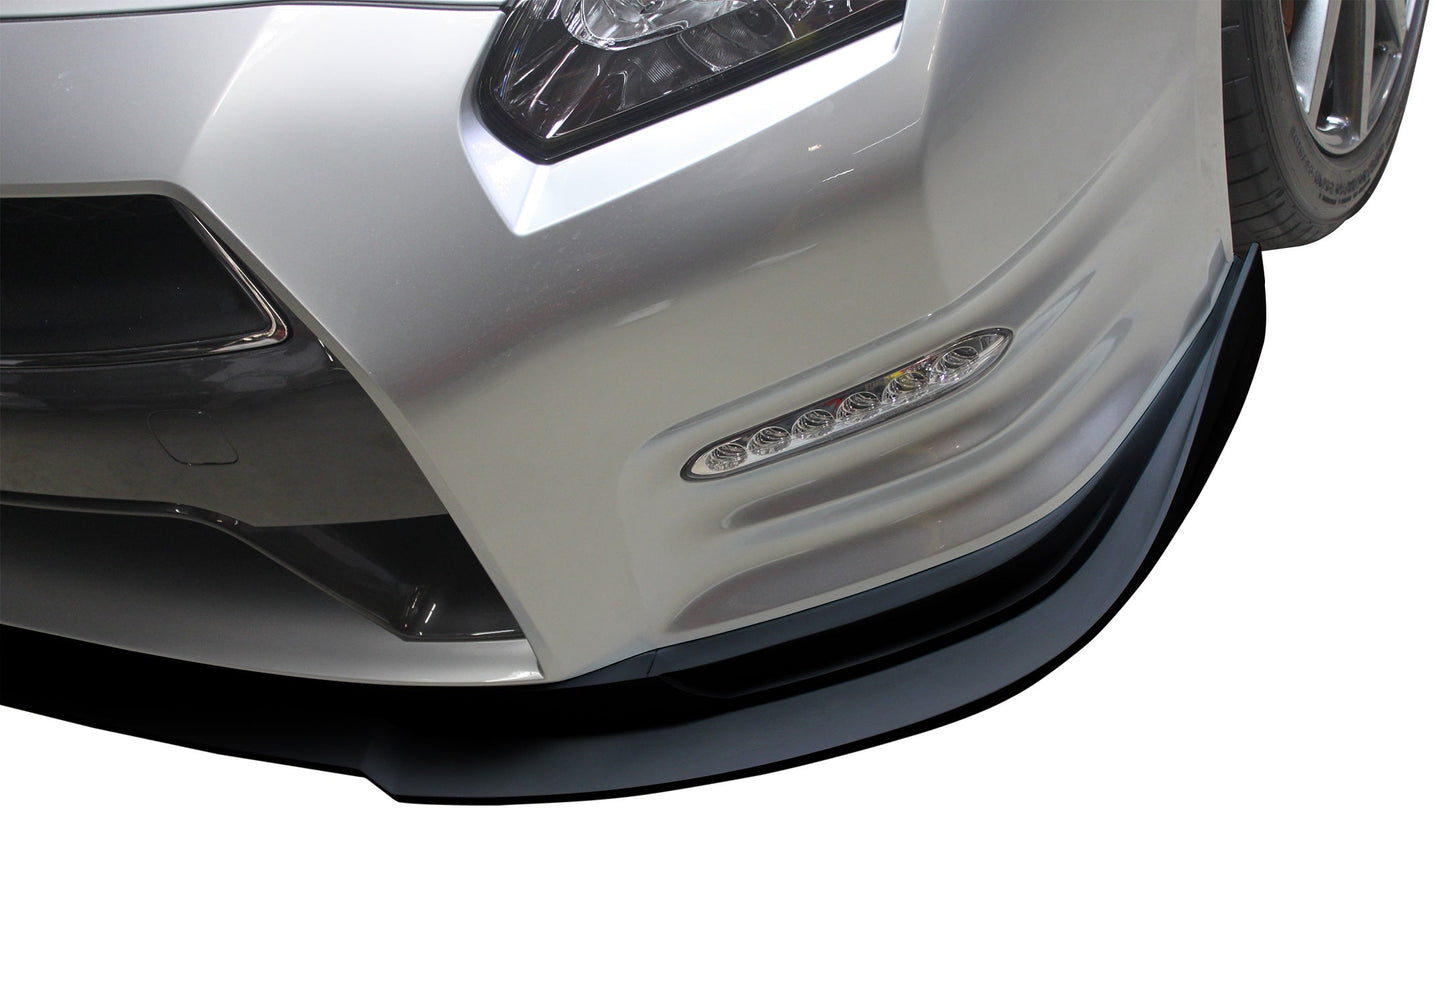 Stillen 2012-2015 Nissan GT-R [R35] Front Splitter (Urethane) - GTRKB13022